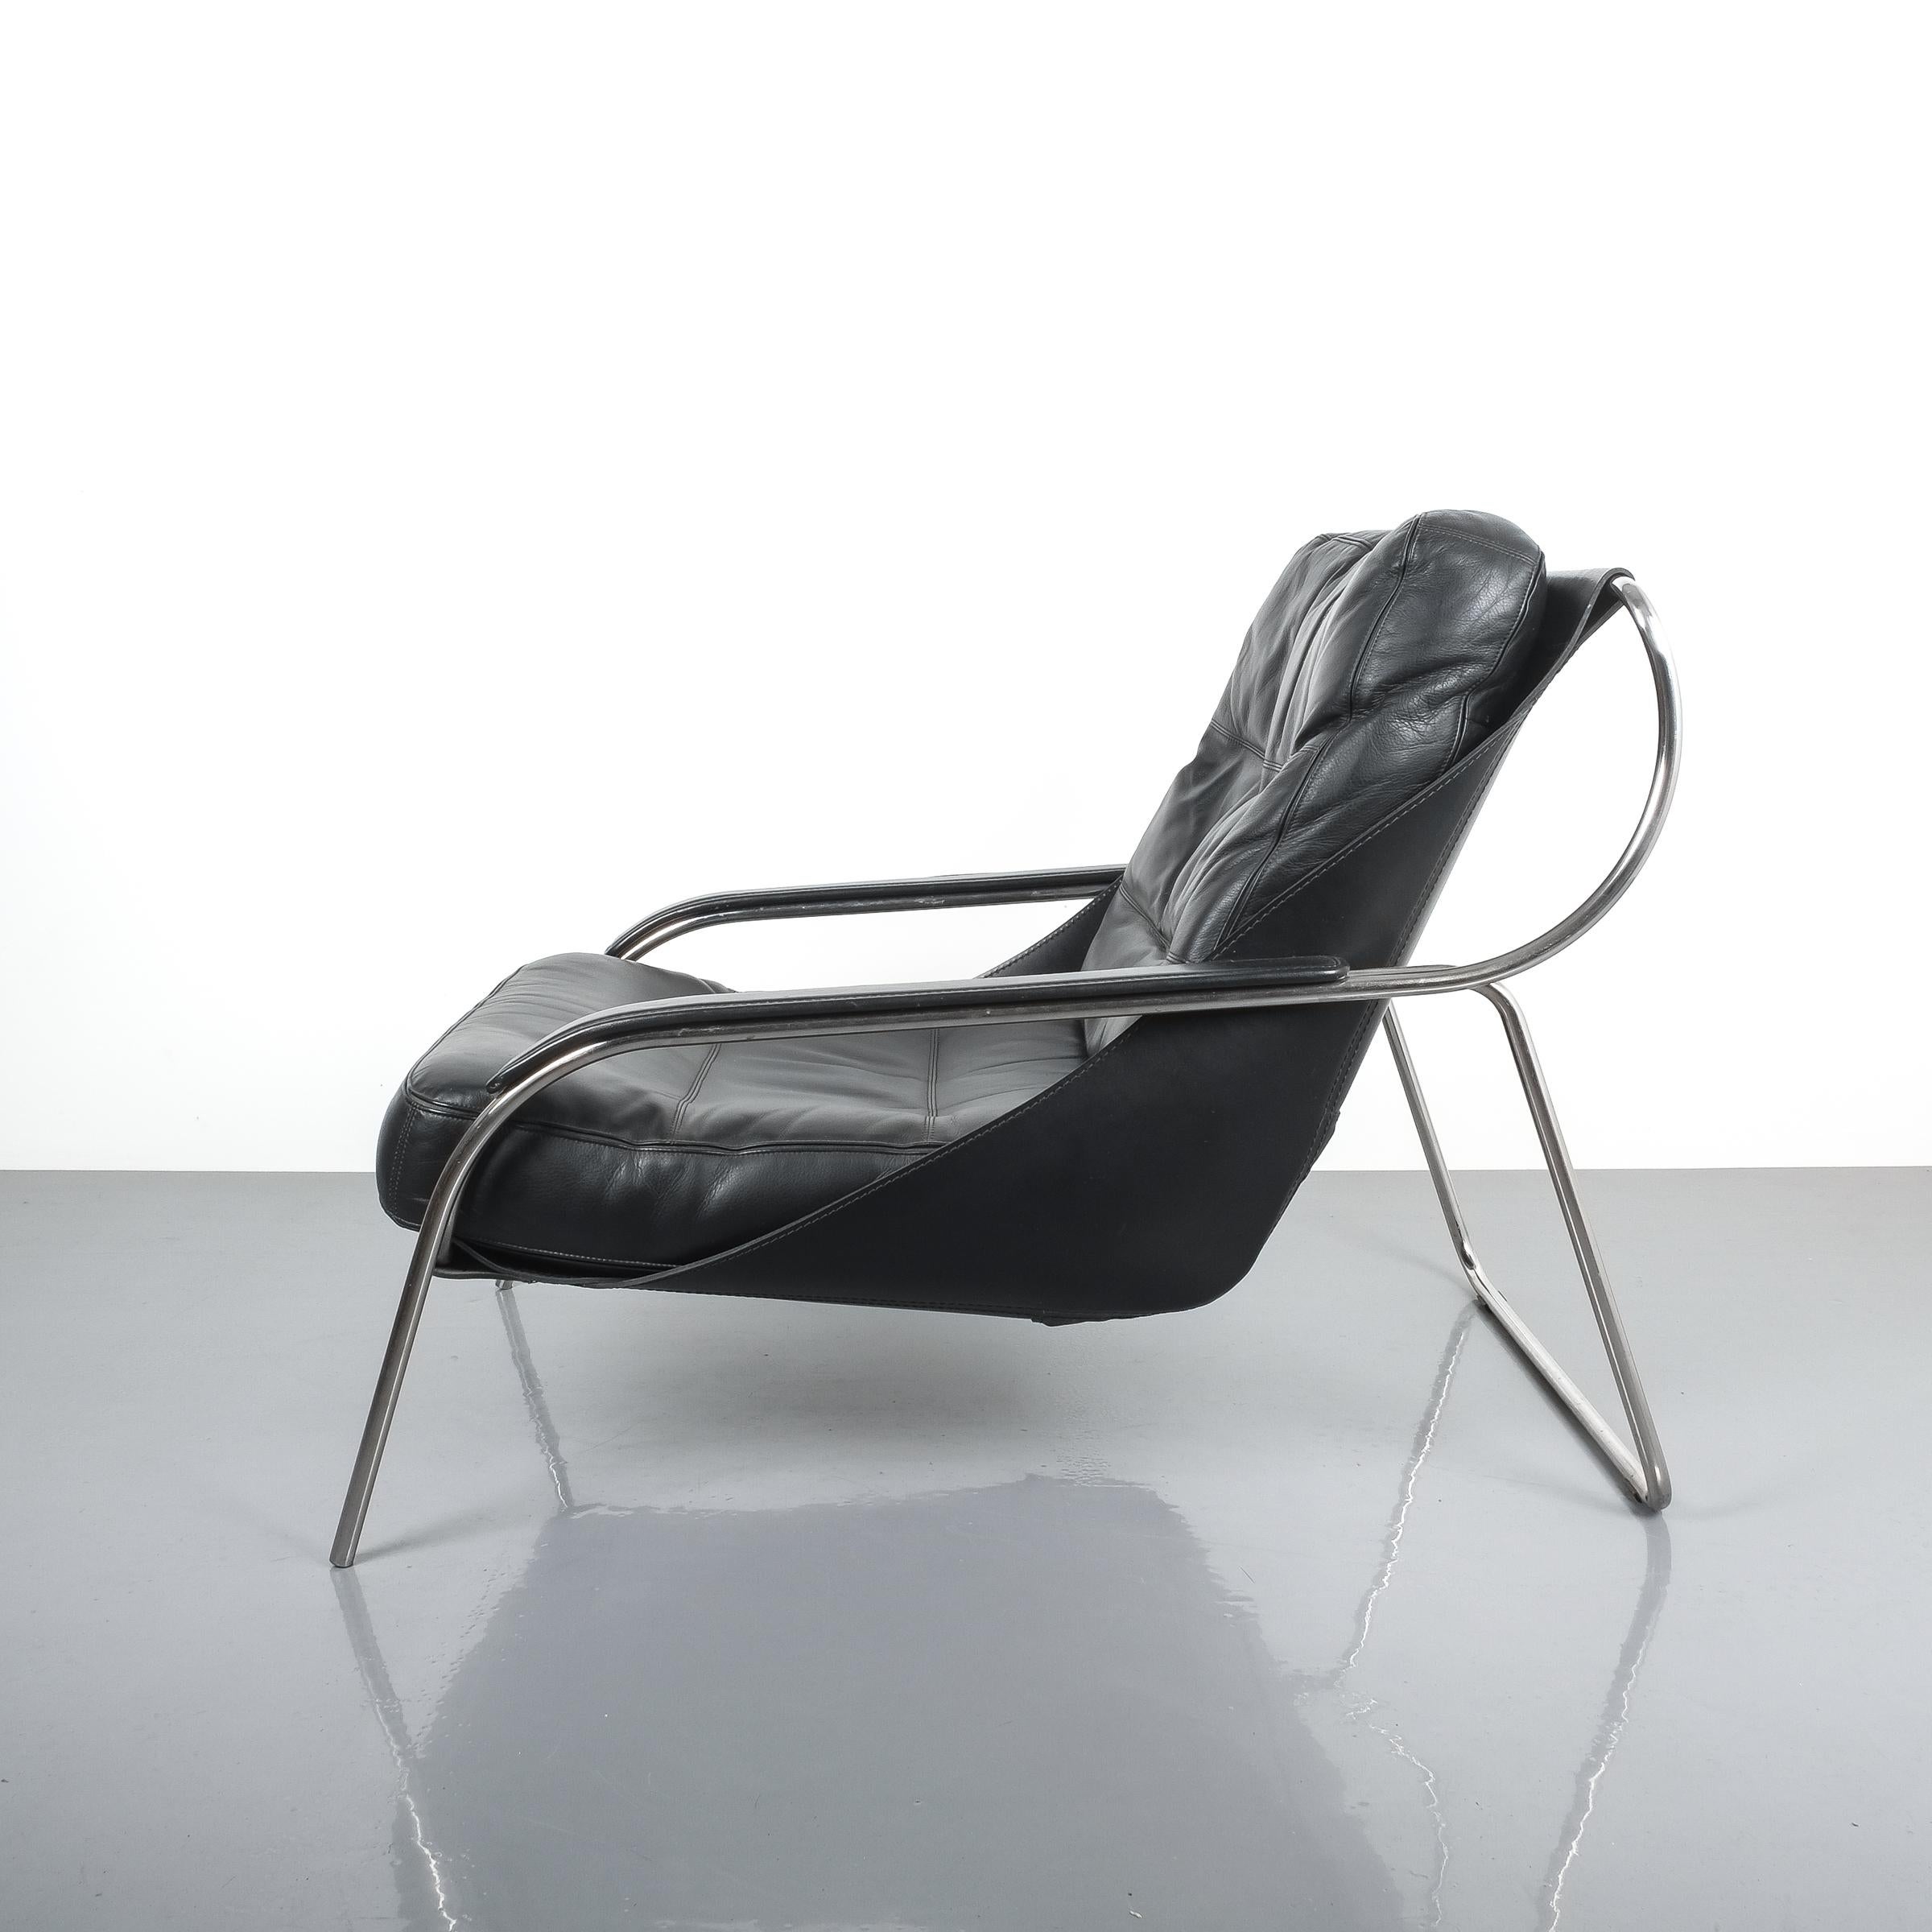 Eleganter Stuhl Maggiolina von Zanotta, entworfen von Marco Zanuso, ursprünglich aus dem Jahr 1947. Spätere Produktion. Der Sling aus Rindsleder trägt ein großes Kissen aus Nappaleder. Ein Gestell aus rostfreiem Stahl stützt diesen sehr bequemen und